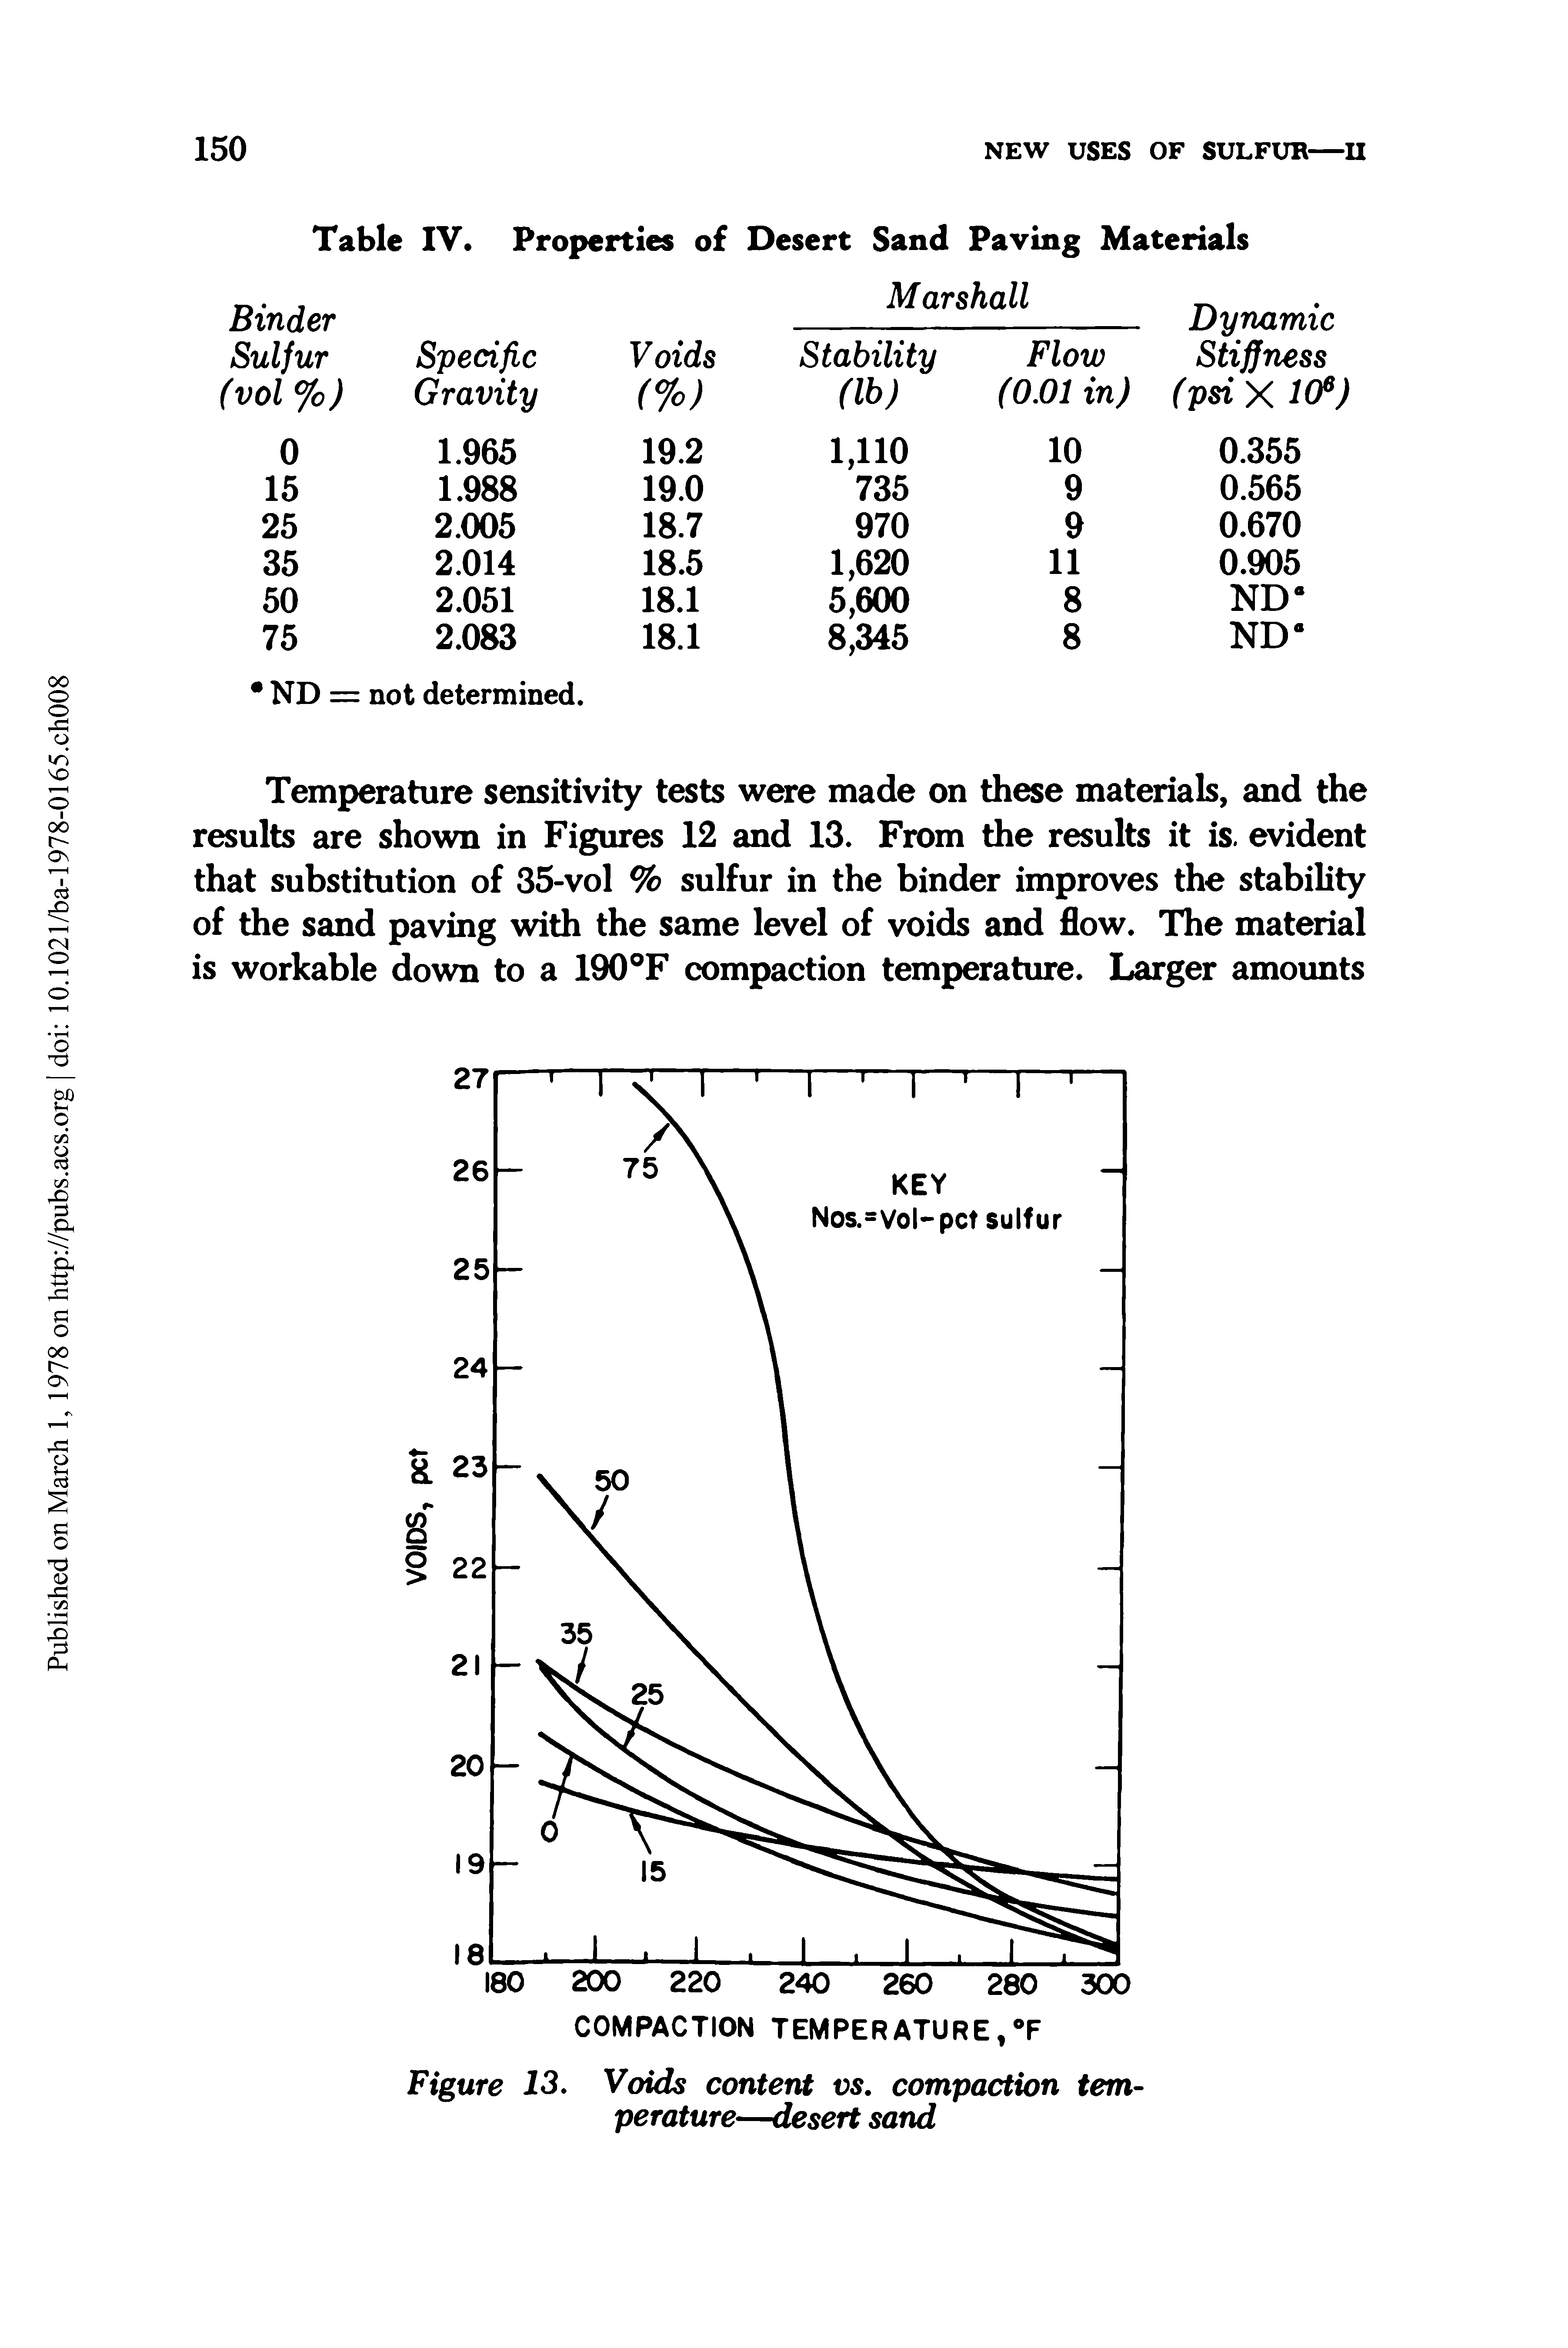 Figure 13. Voids content vs. compaction temperature—desert sand...